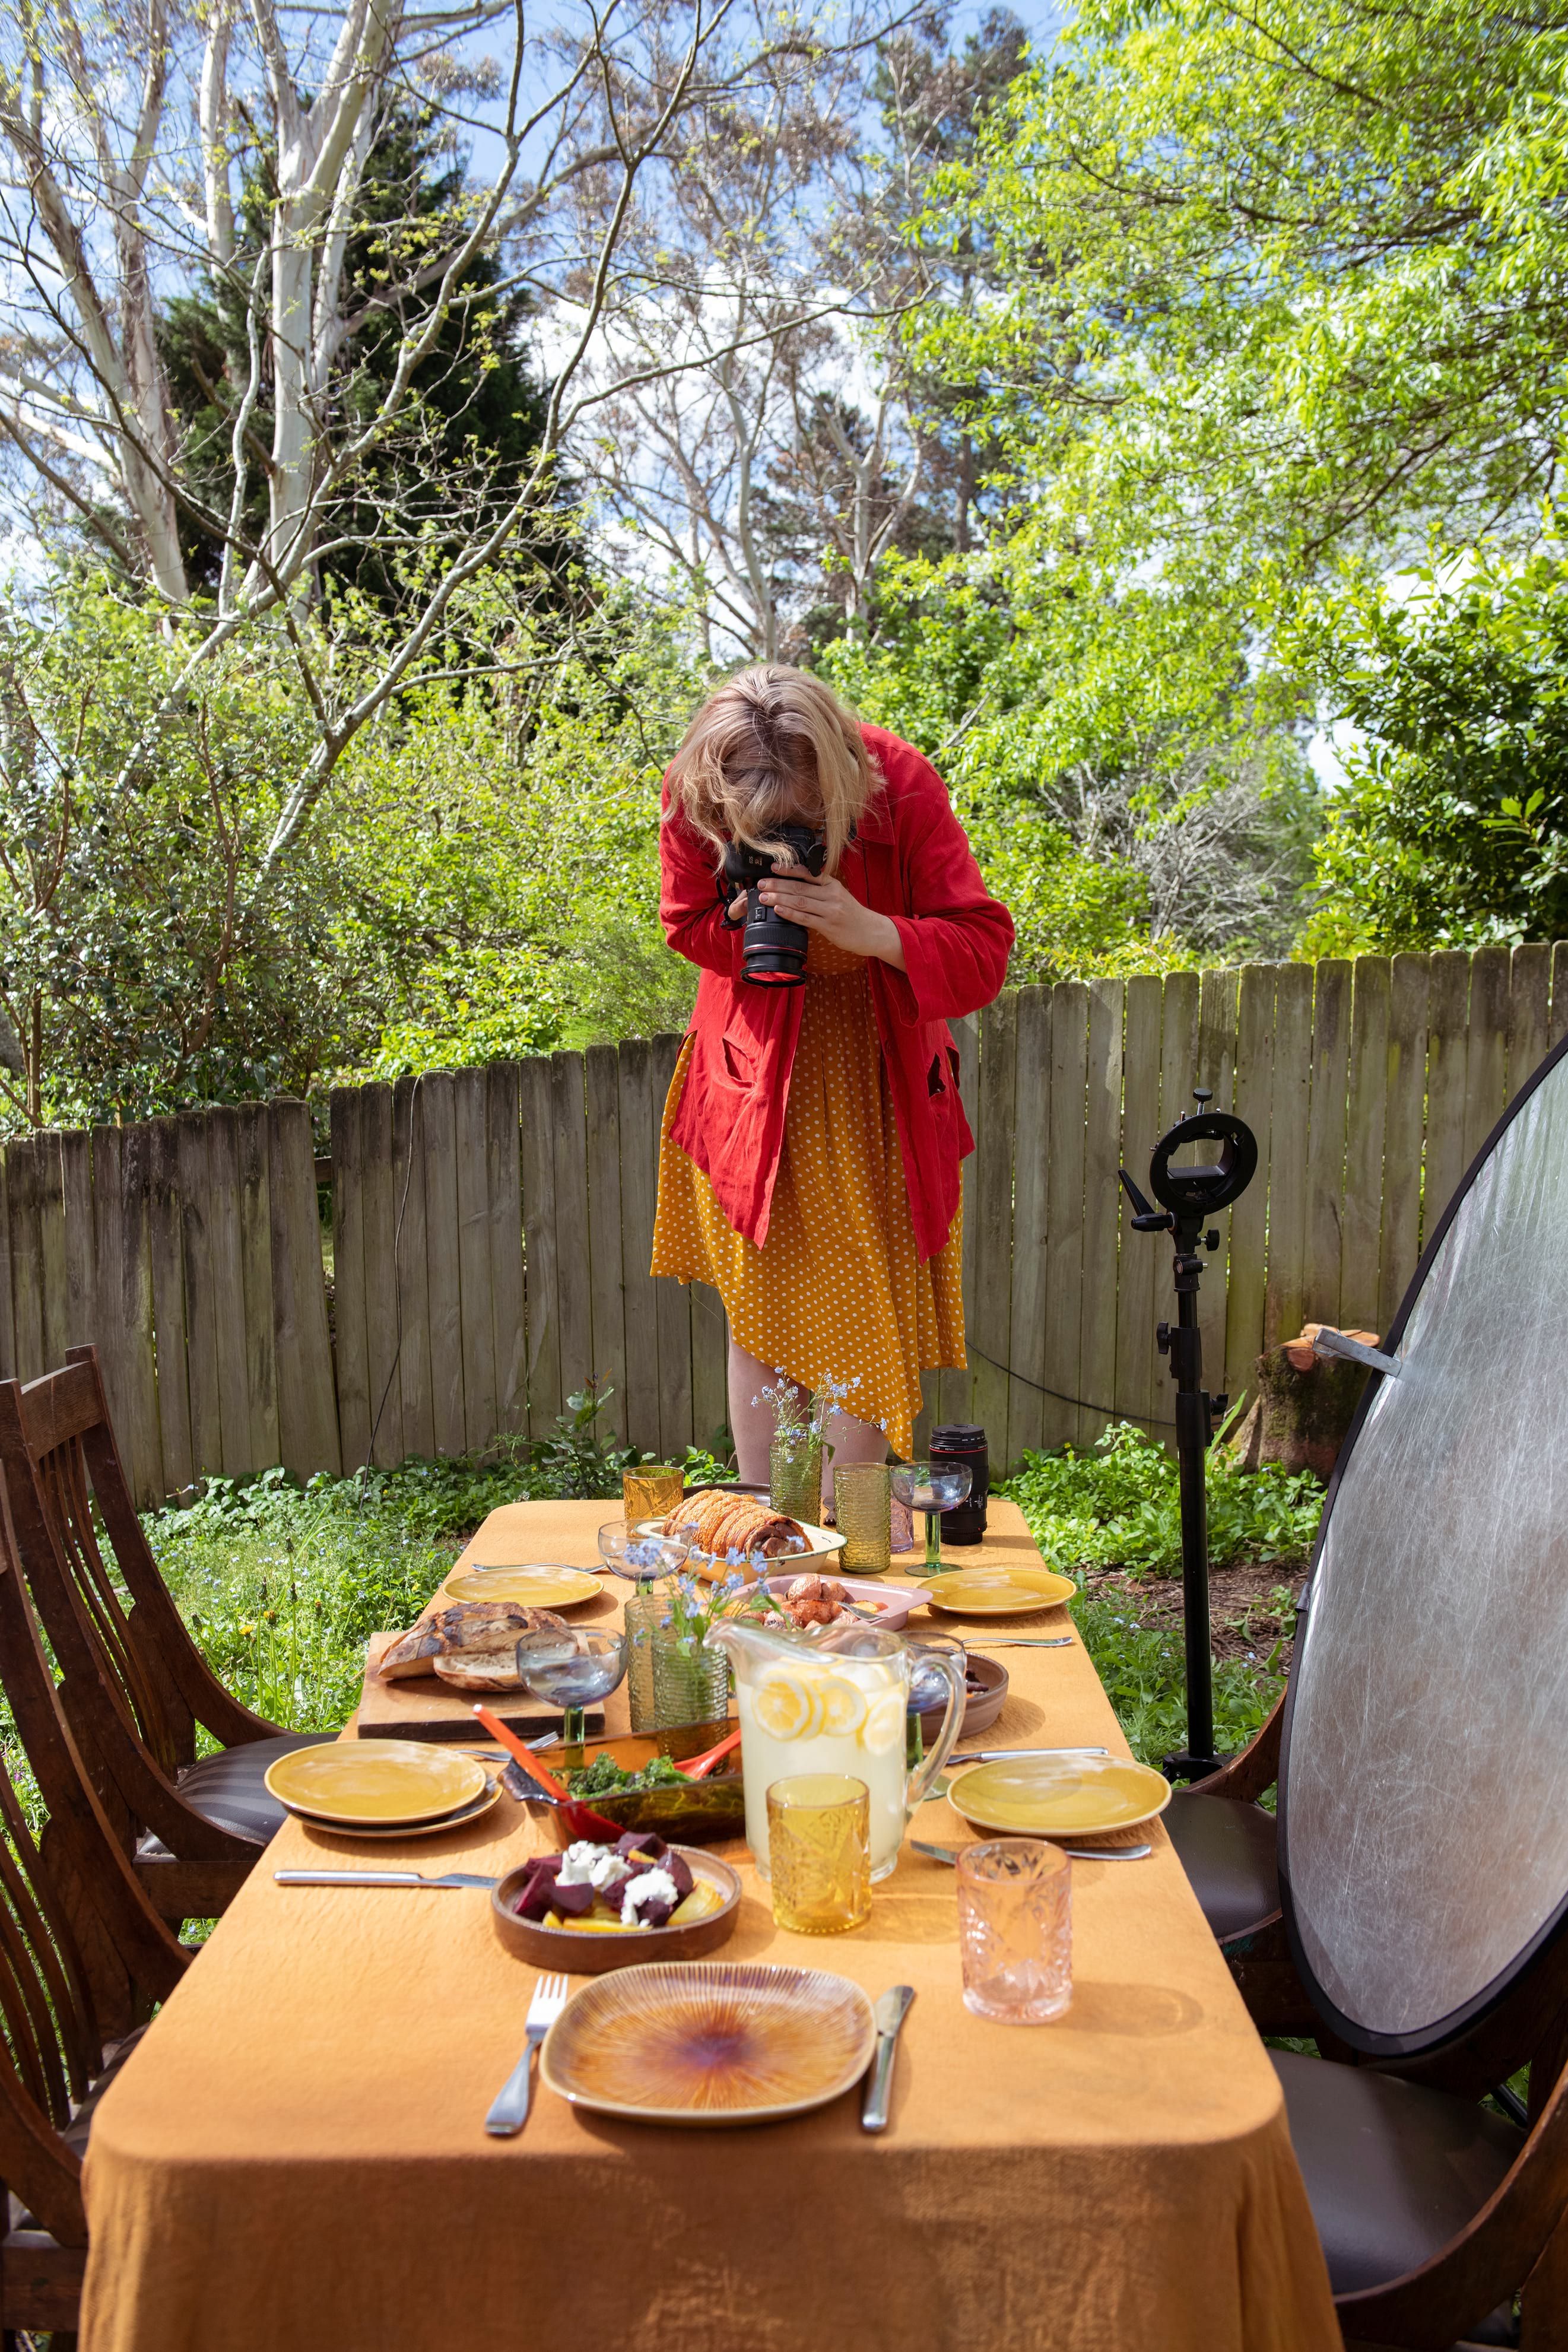 Una donna scatta una foto a un tavolo con sopra del cibo.